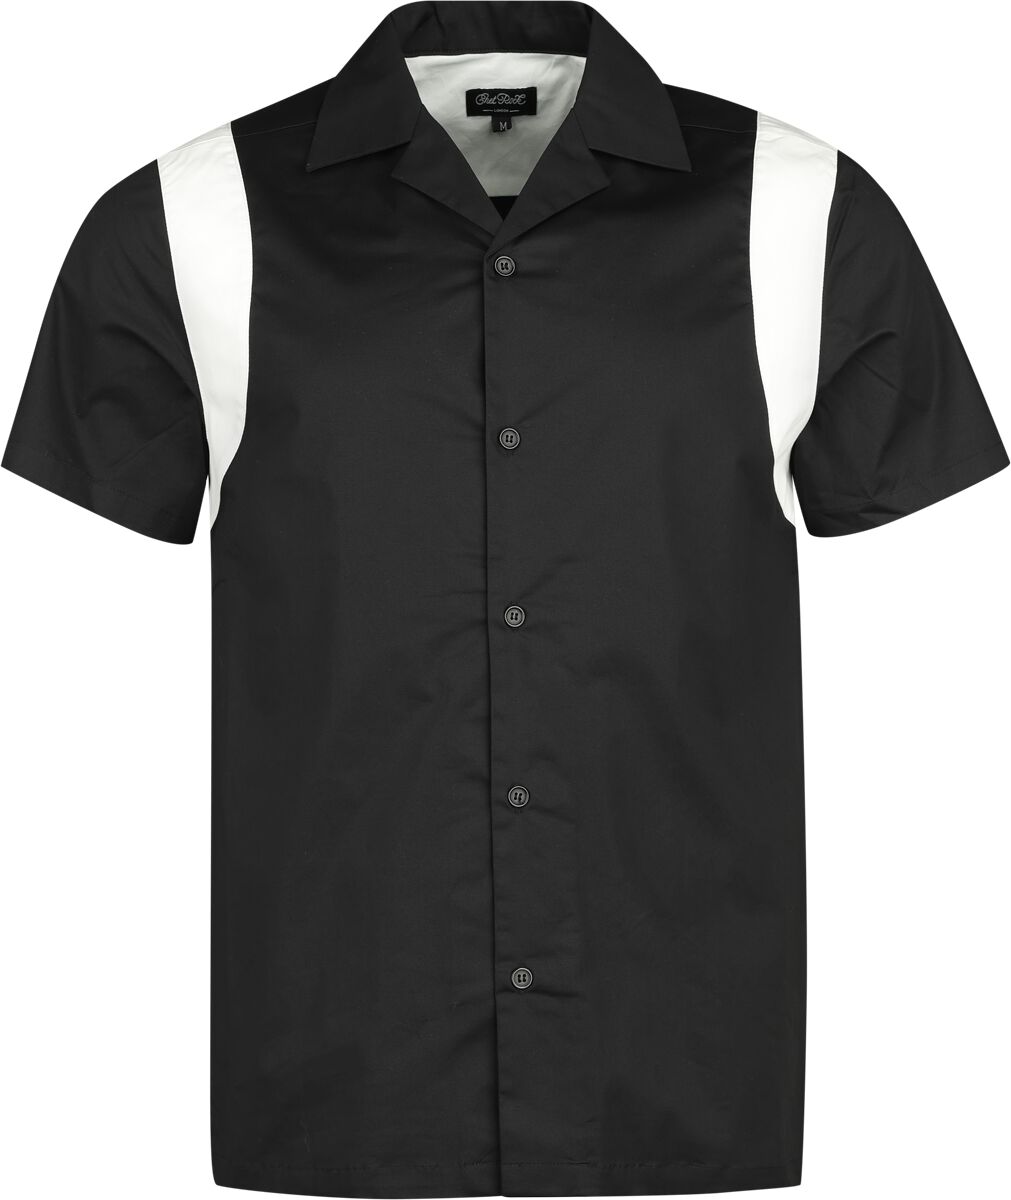 Chet Rock - Rockabilly Kurzarmhemd - Marty Bowling Shirt - S bis XL - für Männer - Größe L - schwarz/weiß